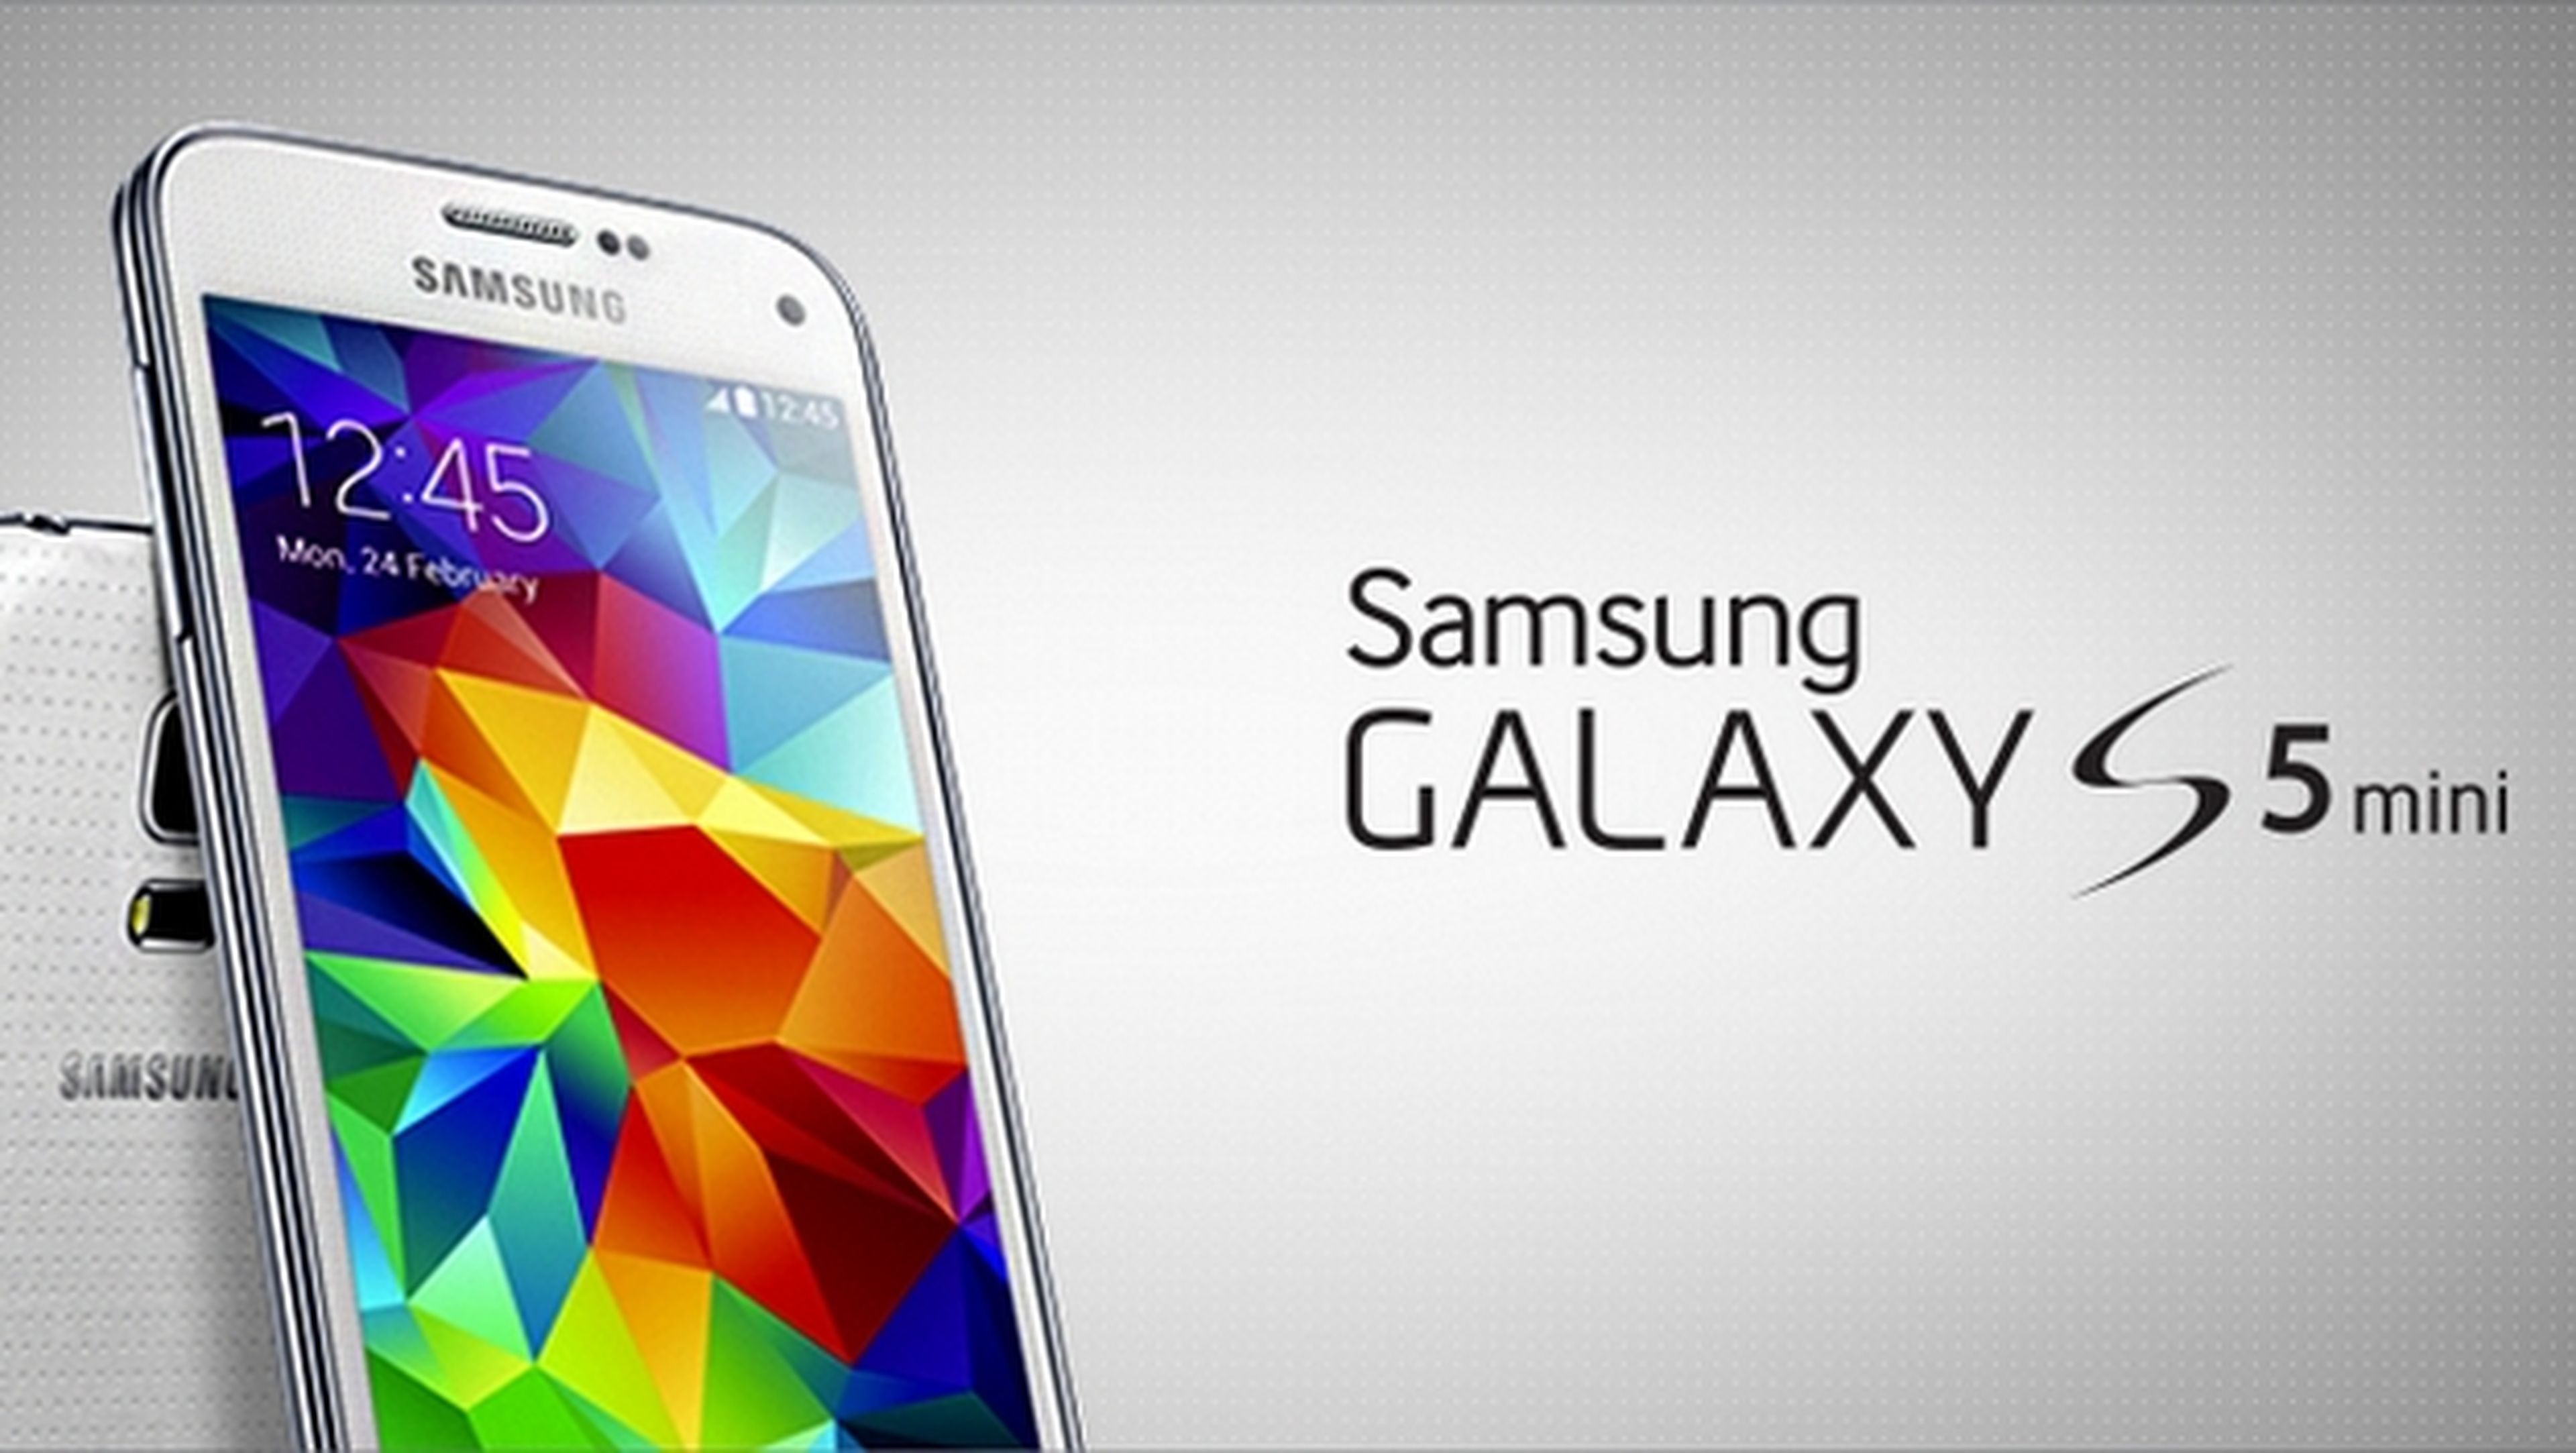 Samsung Galaxy S5 mini, con pantalla de 4.5 pulgadas, procesador de 4 núcleos, sensor de huellas, medidor de pulso y certificación IP67.